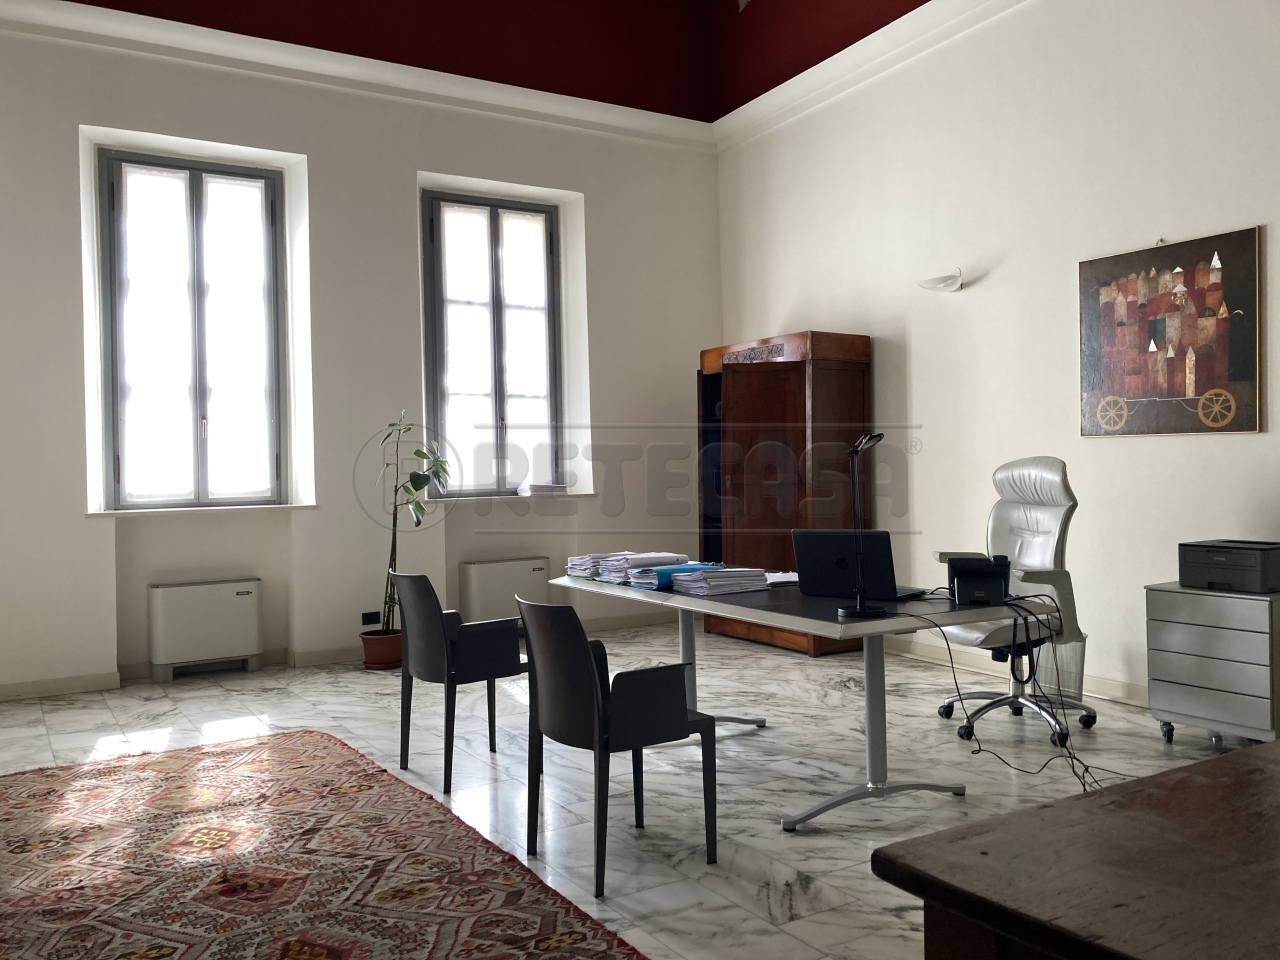 Ufficio / Studio in affitto a Crema, 2 locali, prezzo € 1.000 | PortaleAgenzieImmobiliari.it